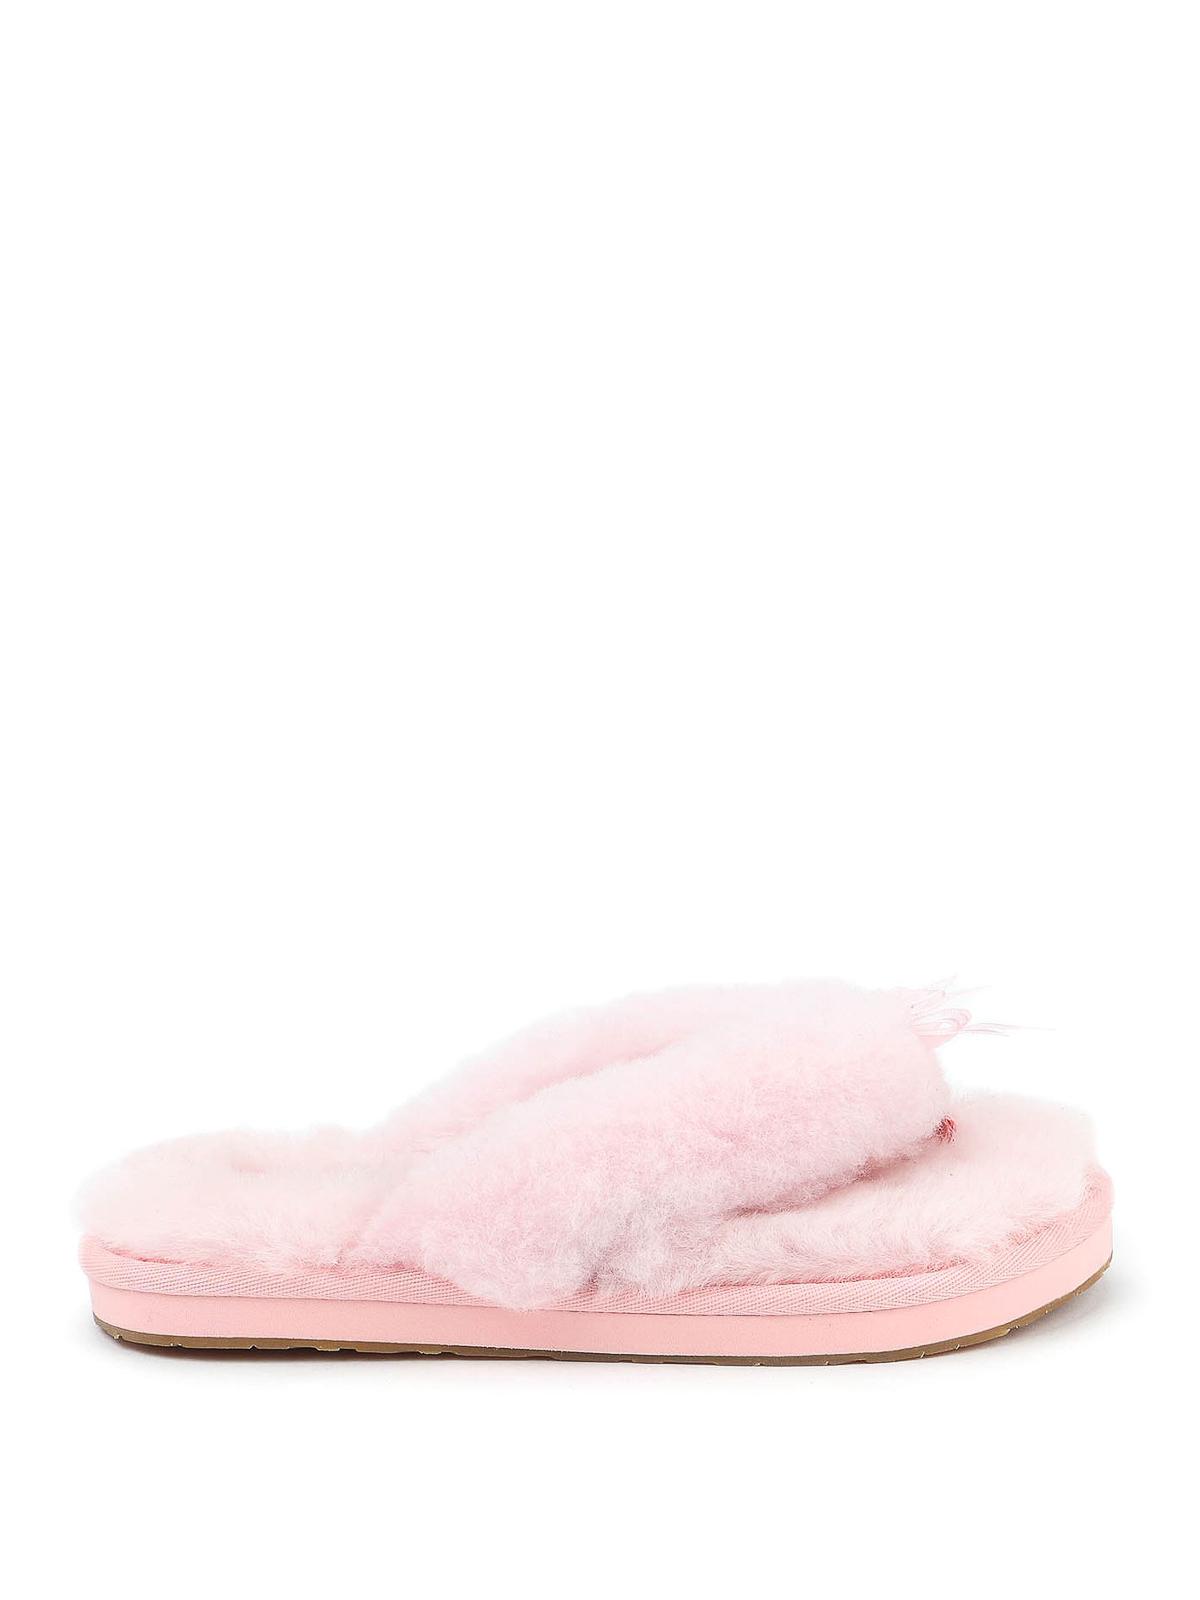 ugg pink flip flop slippers